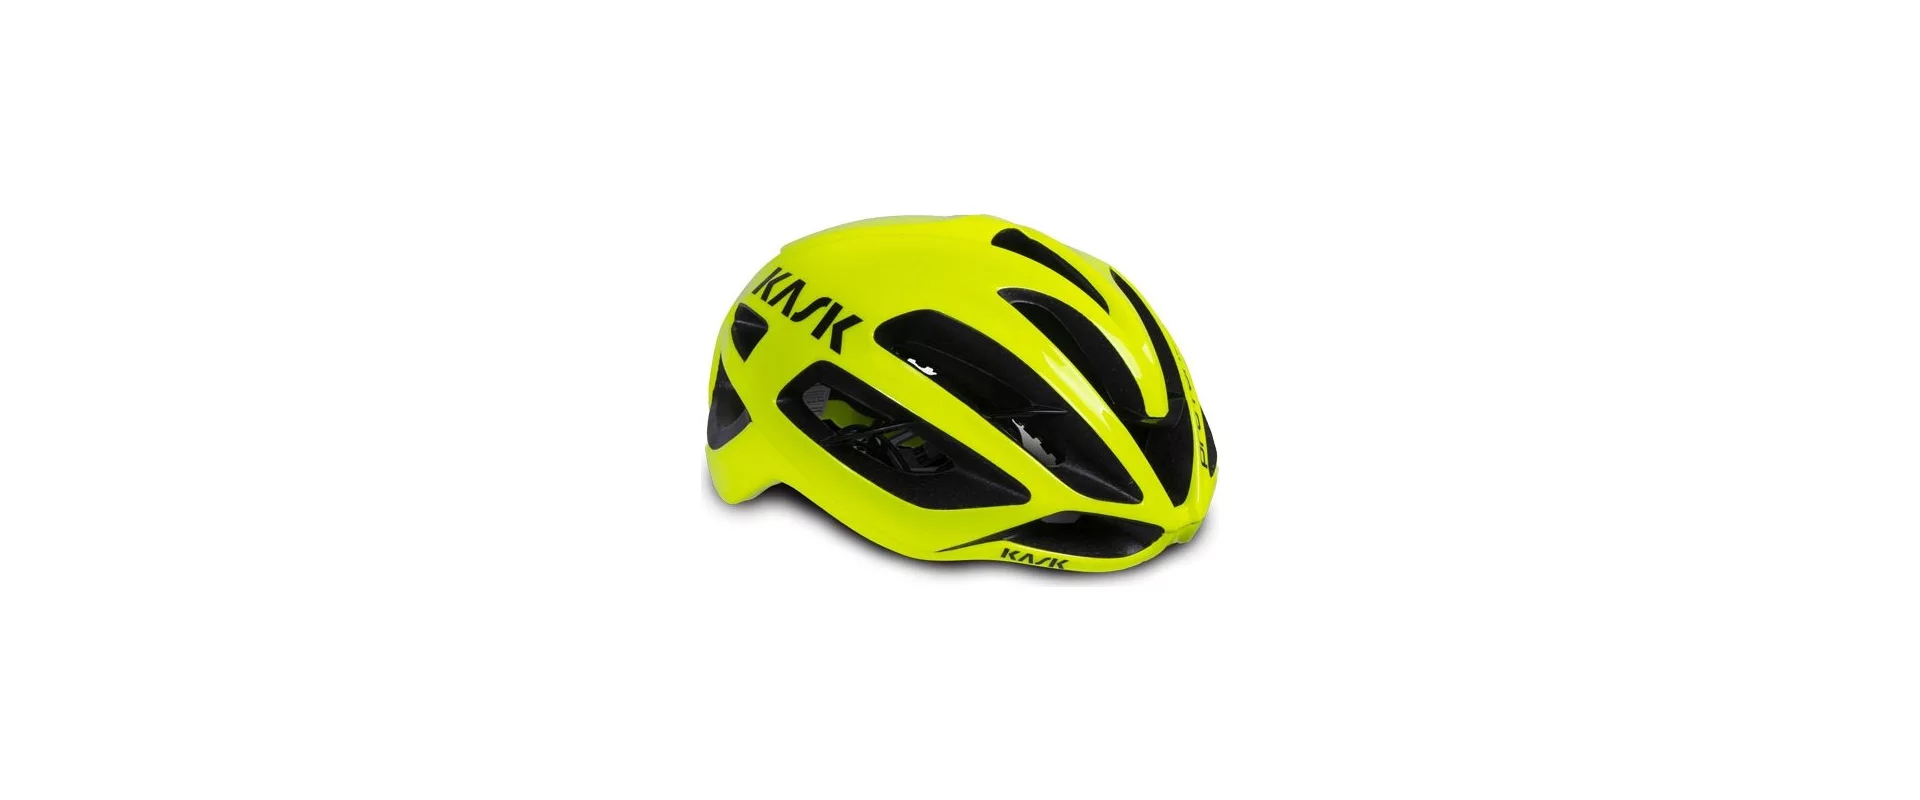 Kask PROTONE / Шлем велосипедный